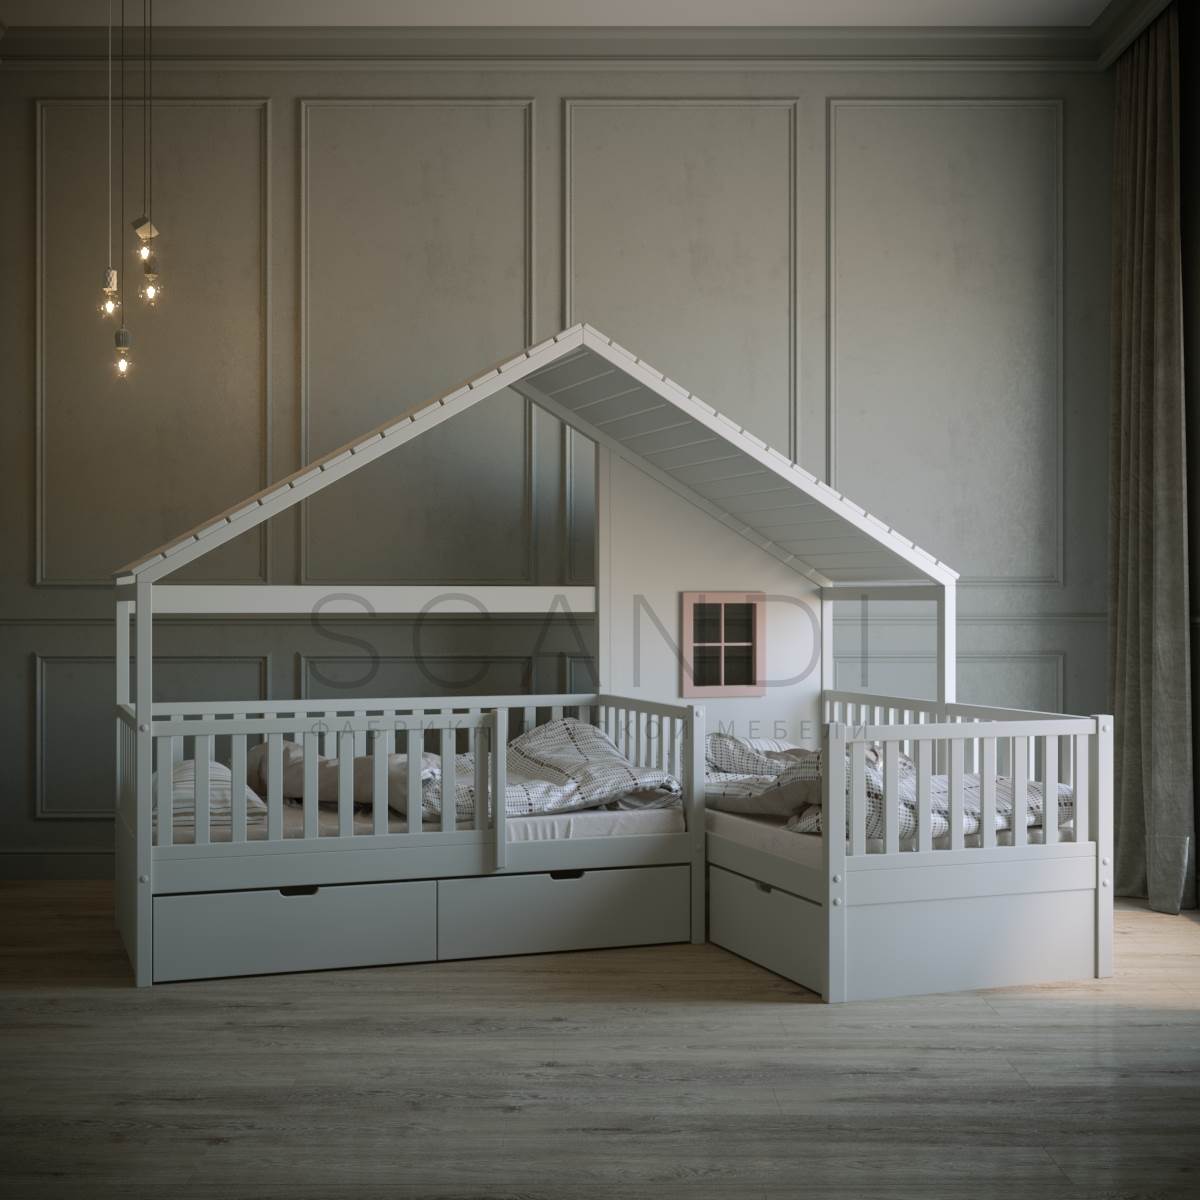 Угловая детская кровать-домик с крышей Де-Лейен купить в Санкт-Петербурге